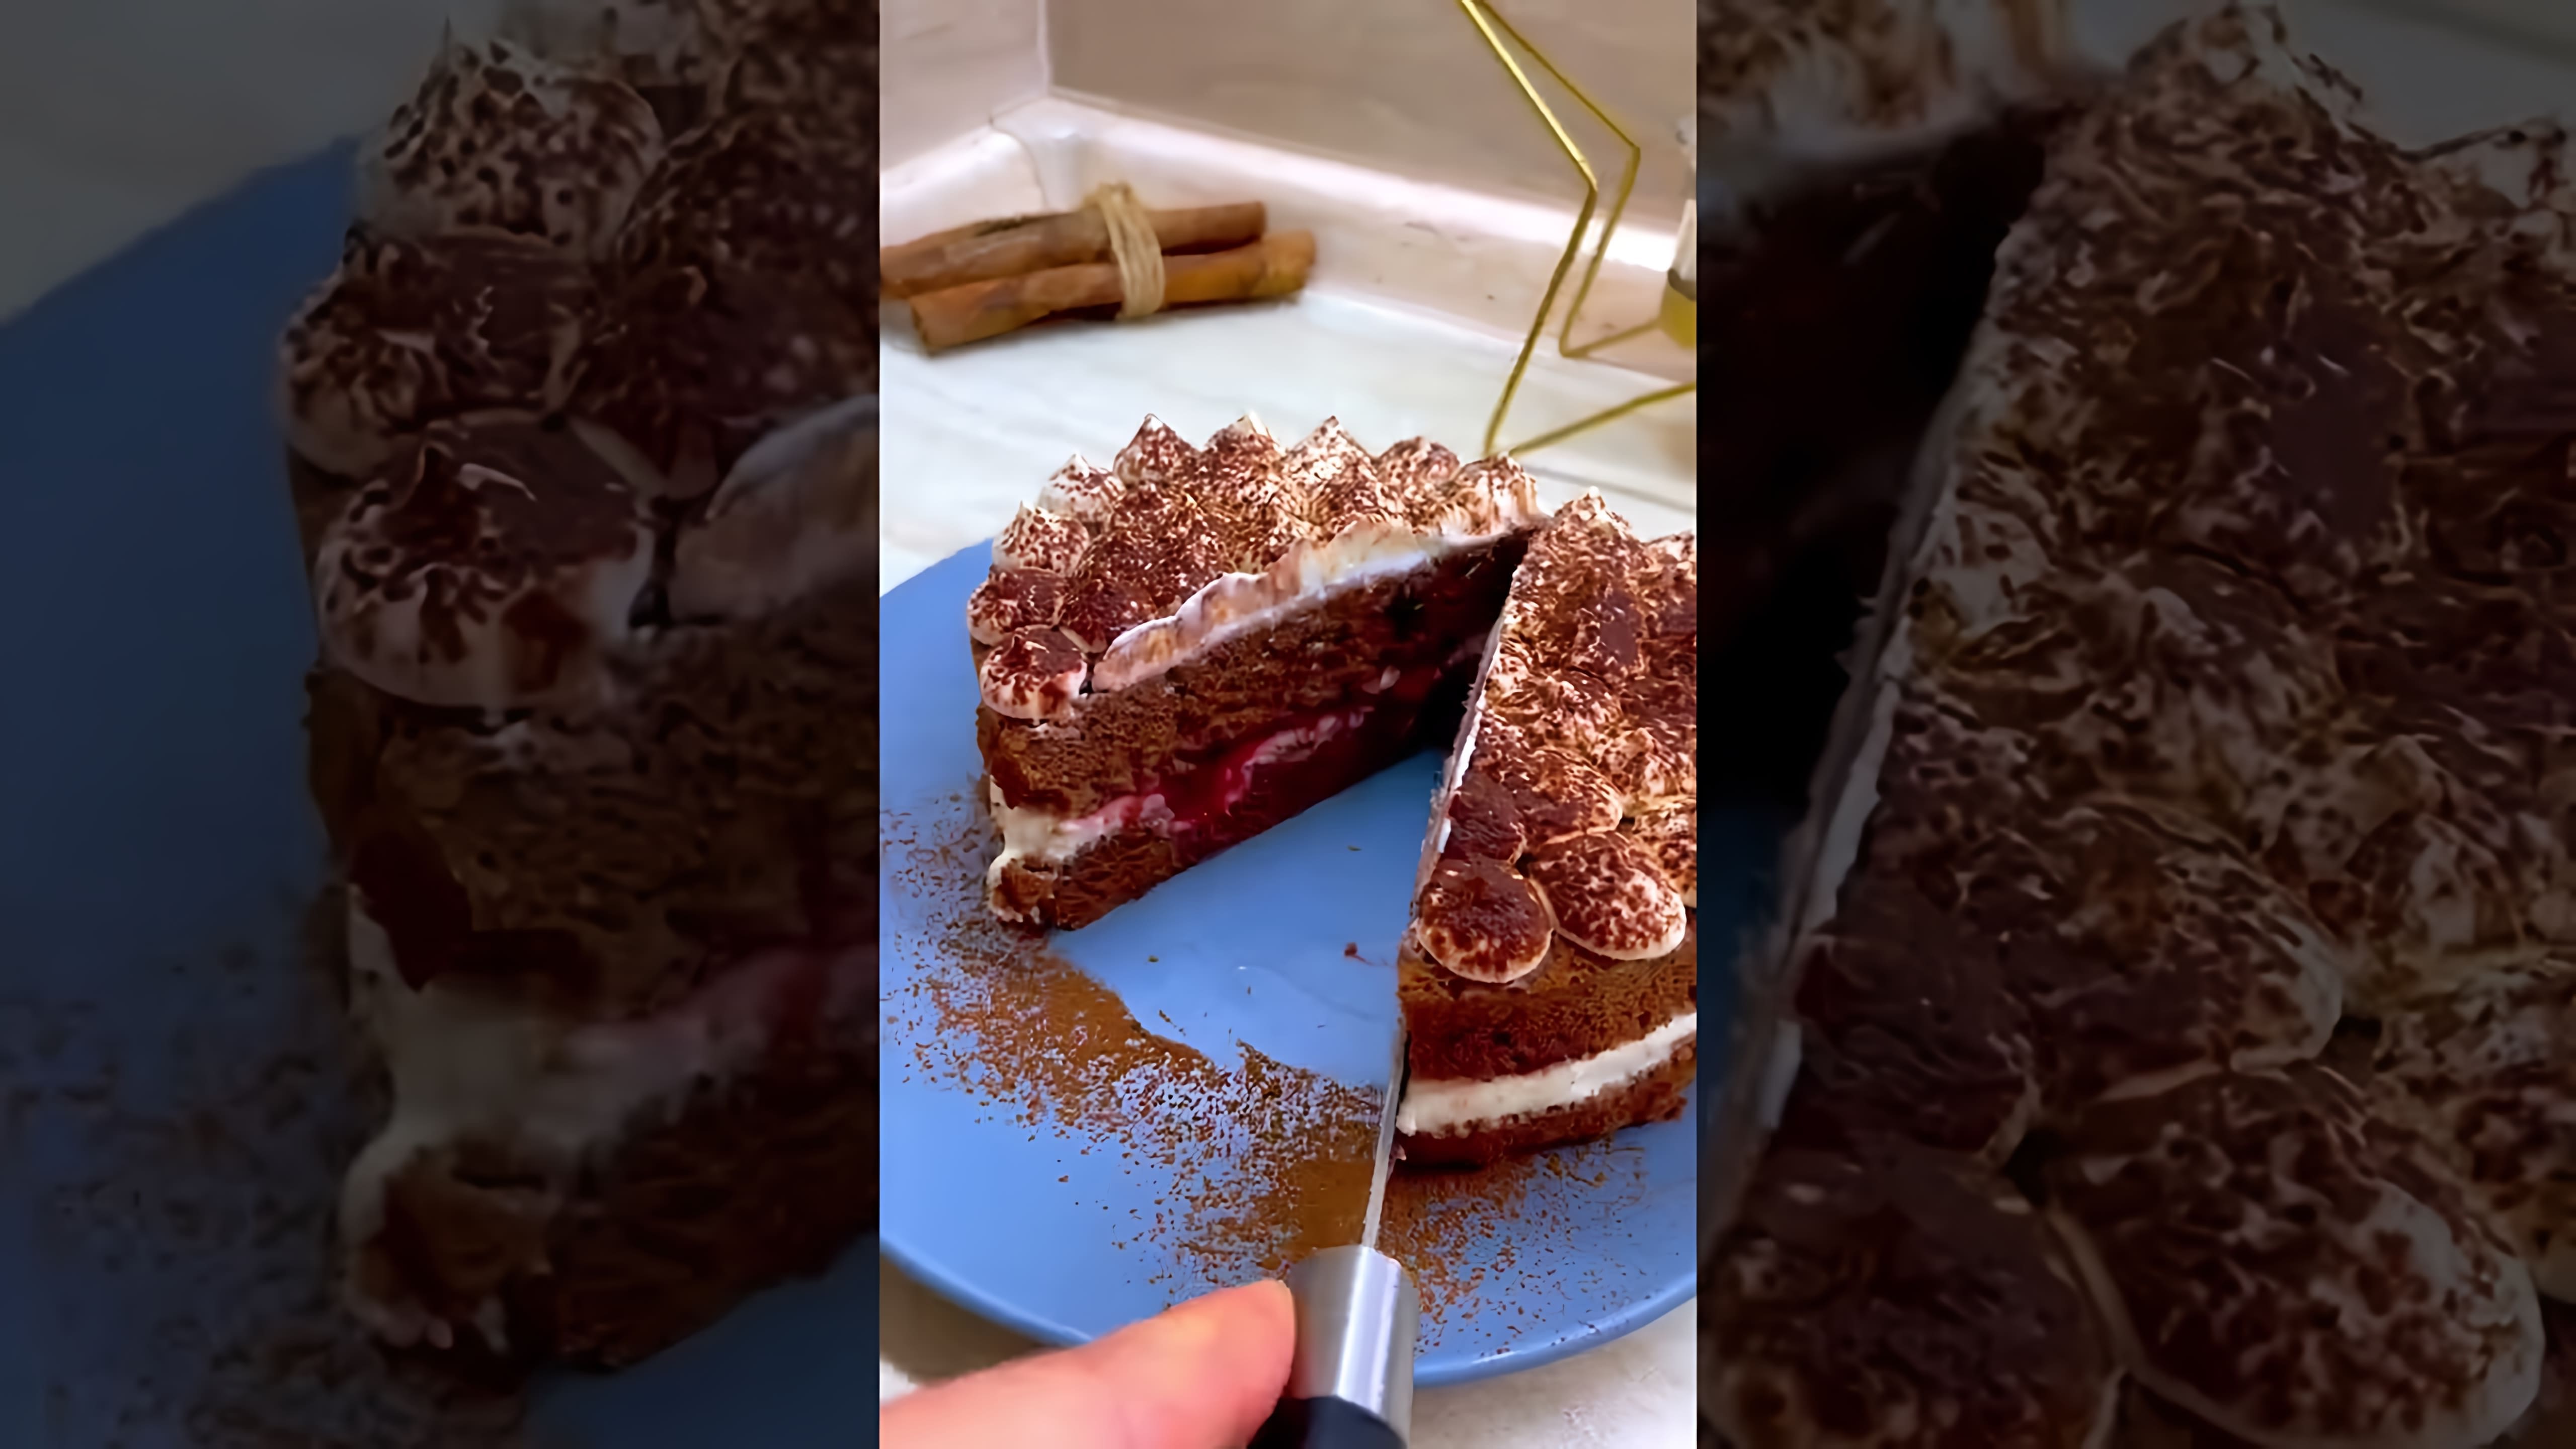 В этом видео демонстрируется рецепт приготовления торта в микроволновке за 5 минут